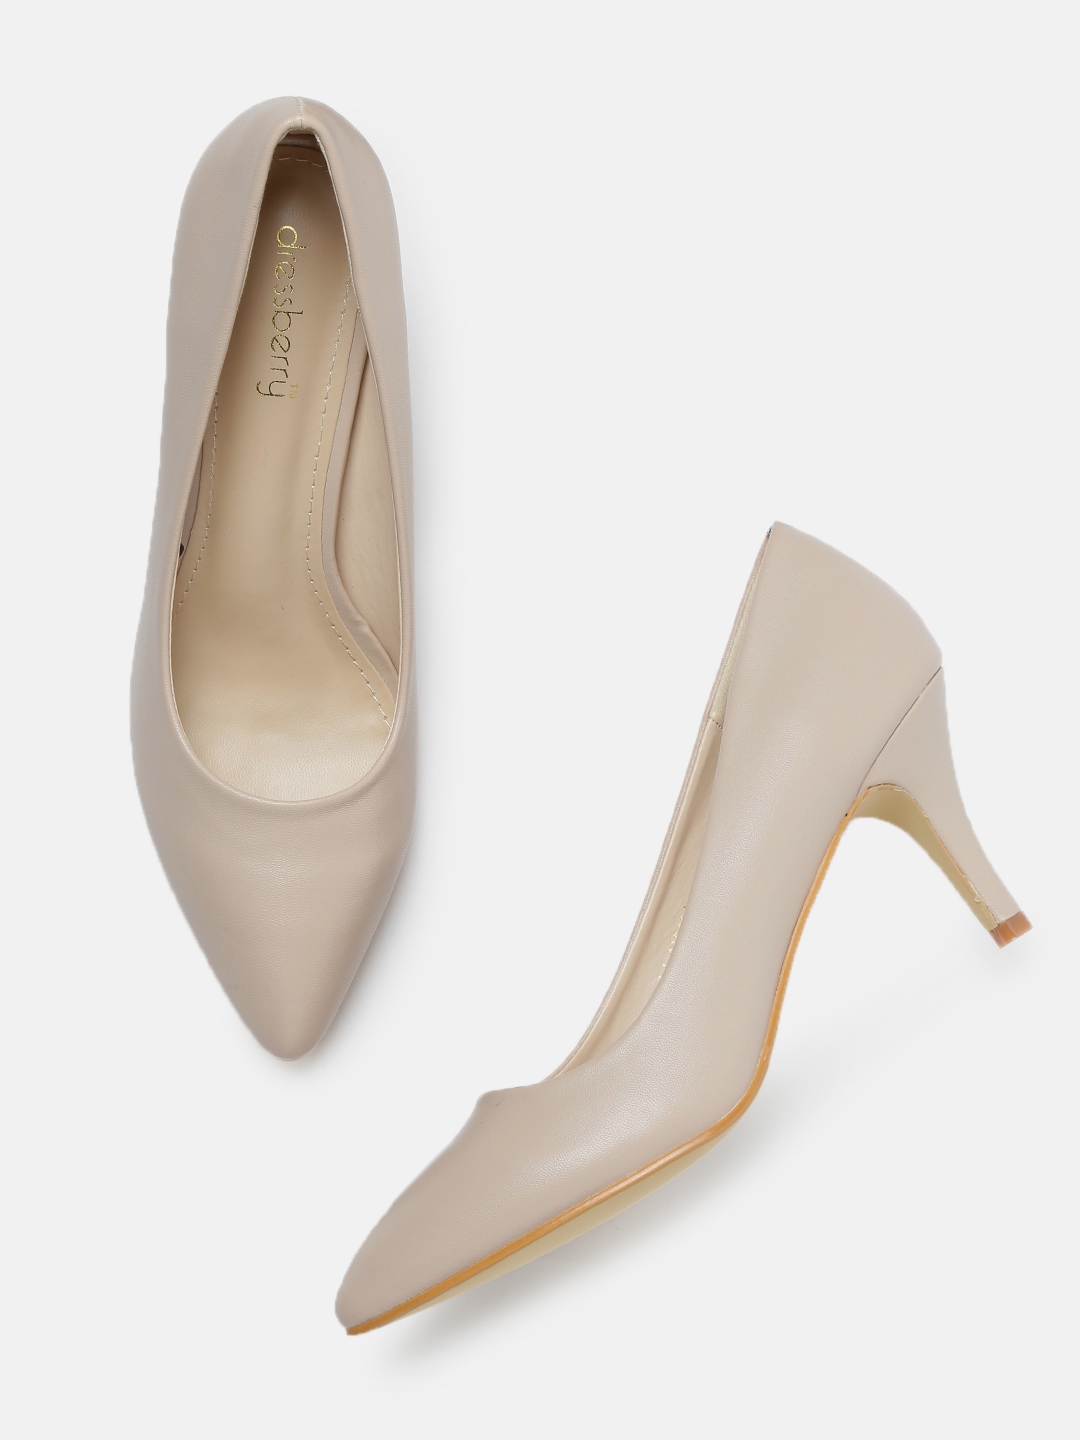 dressberry heels online